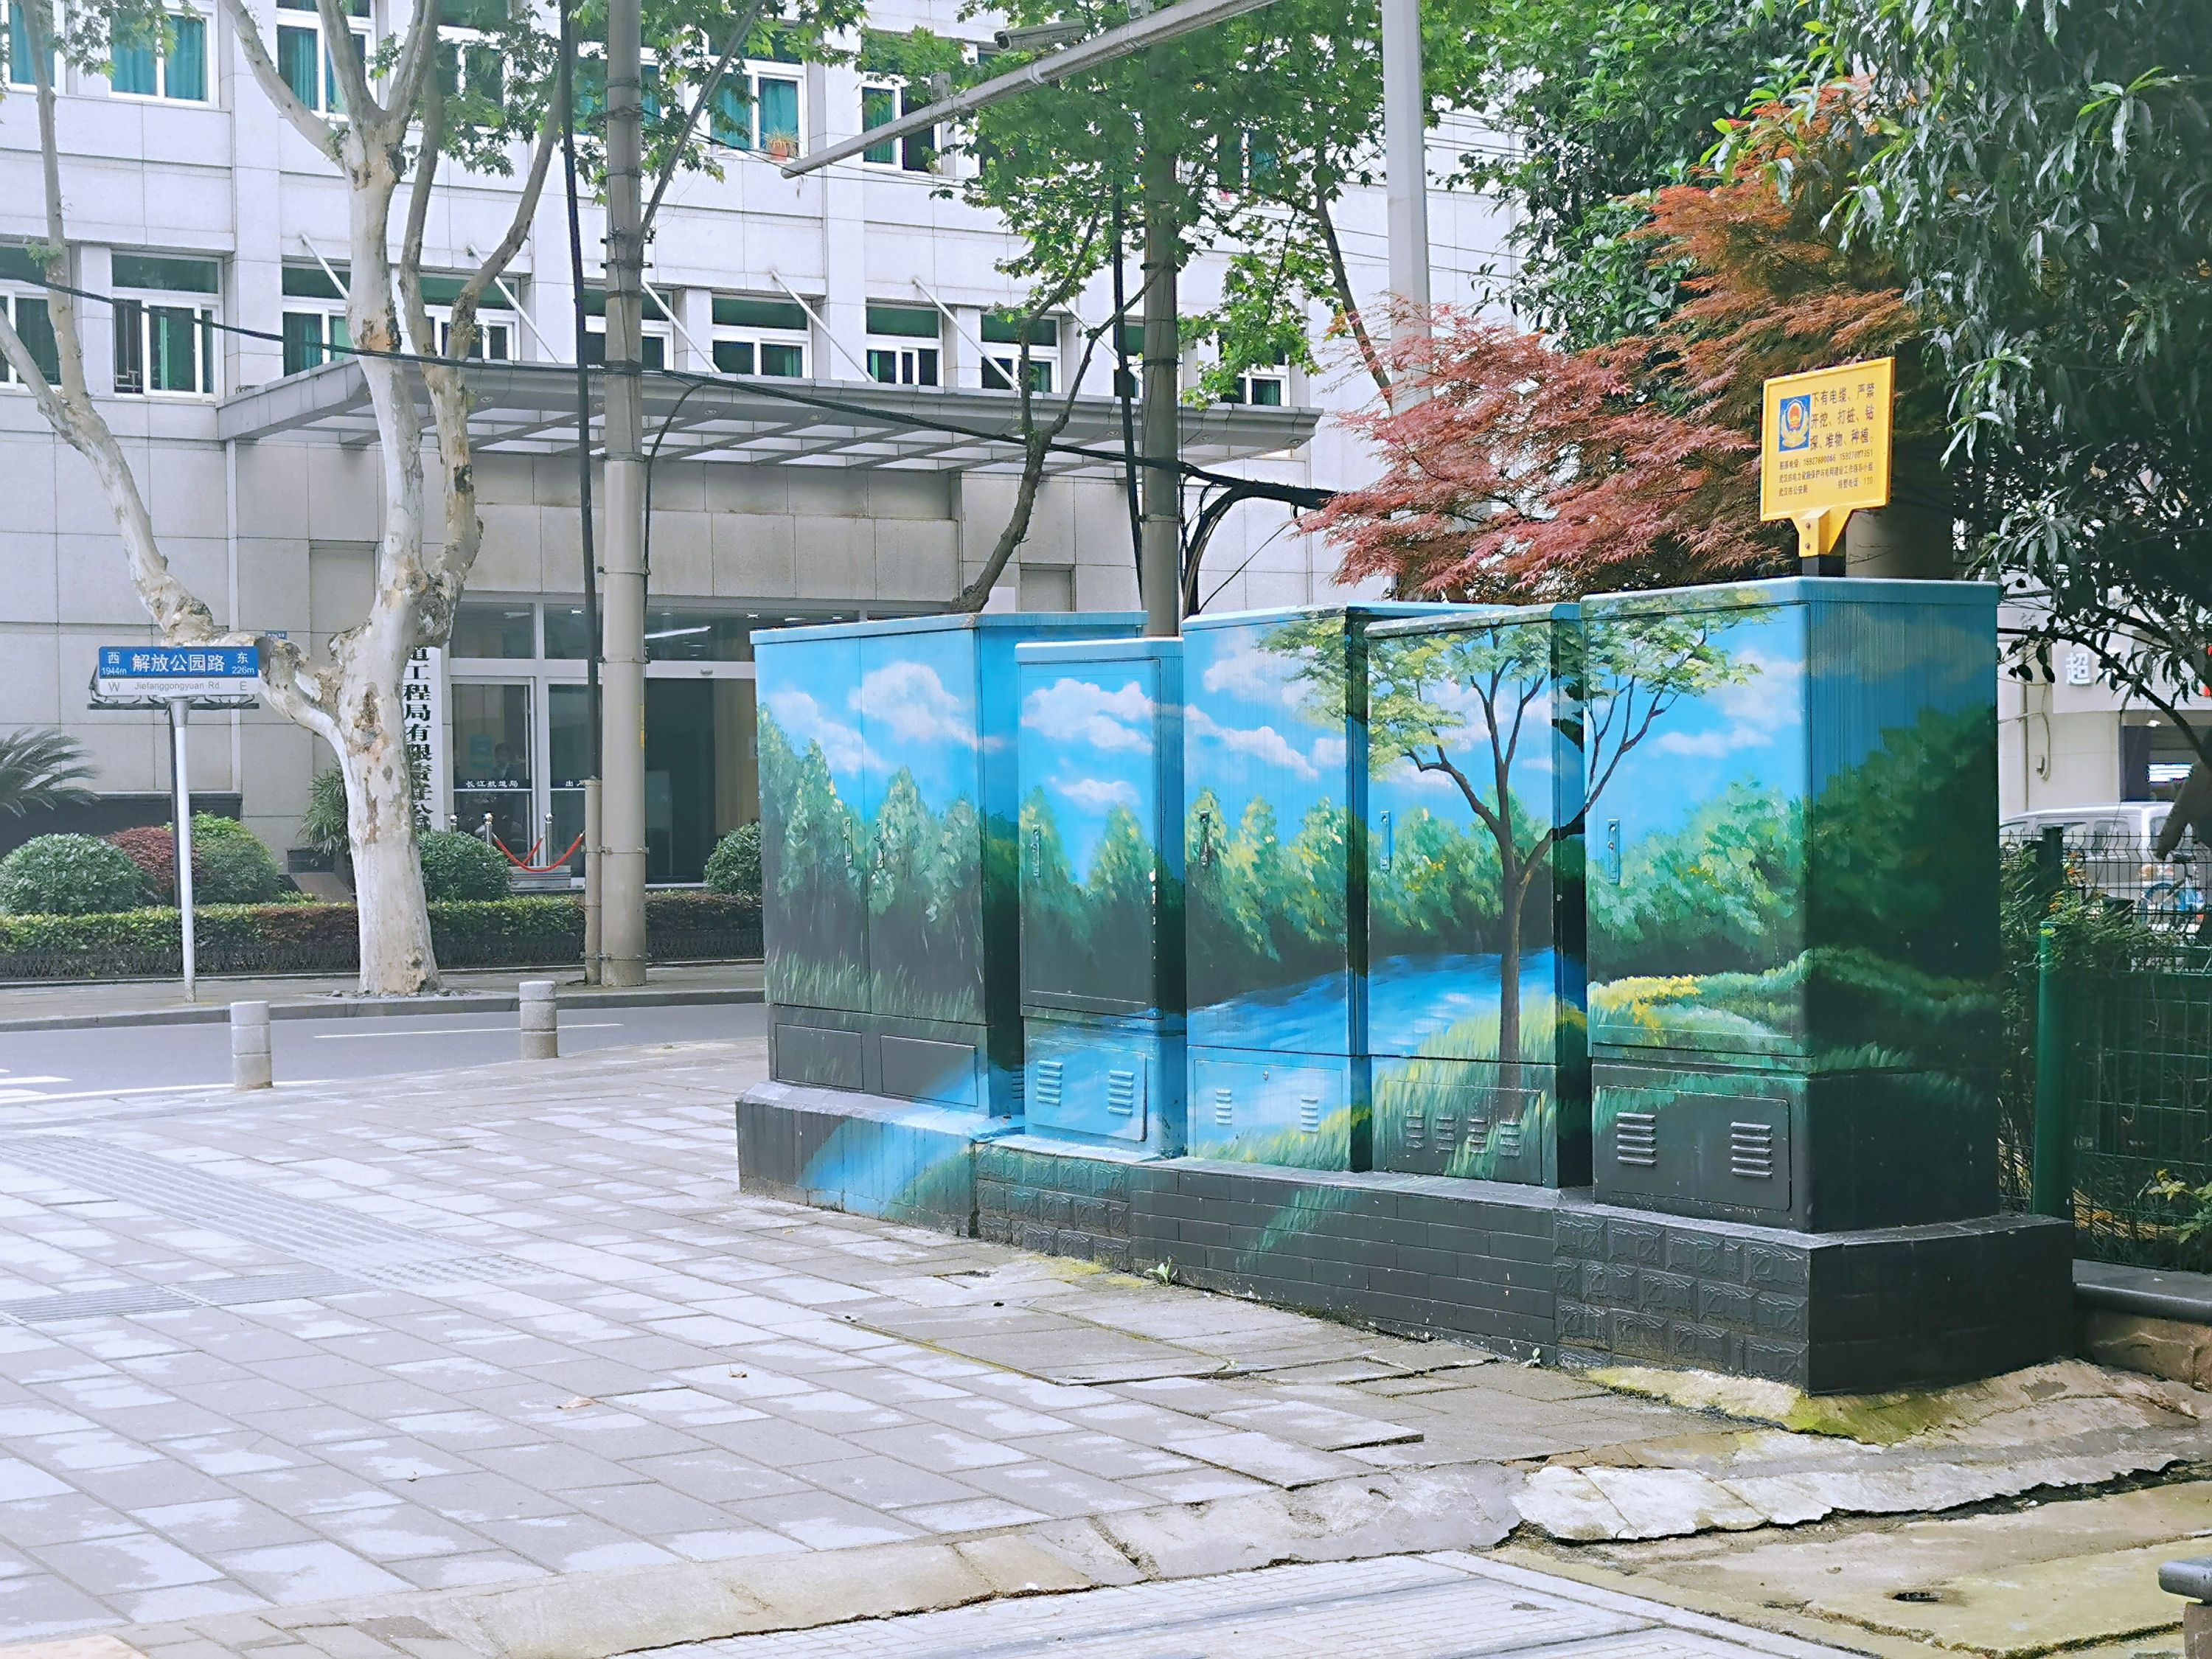 汉口街头配电箱披上彩绘400余幅彩色风景与城市道路融为一体